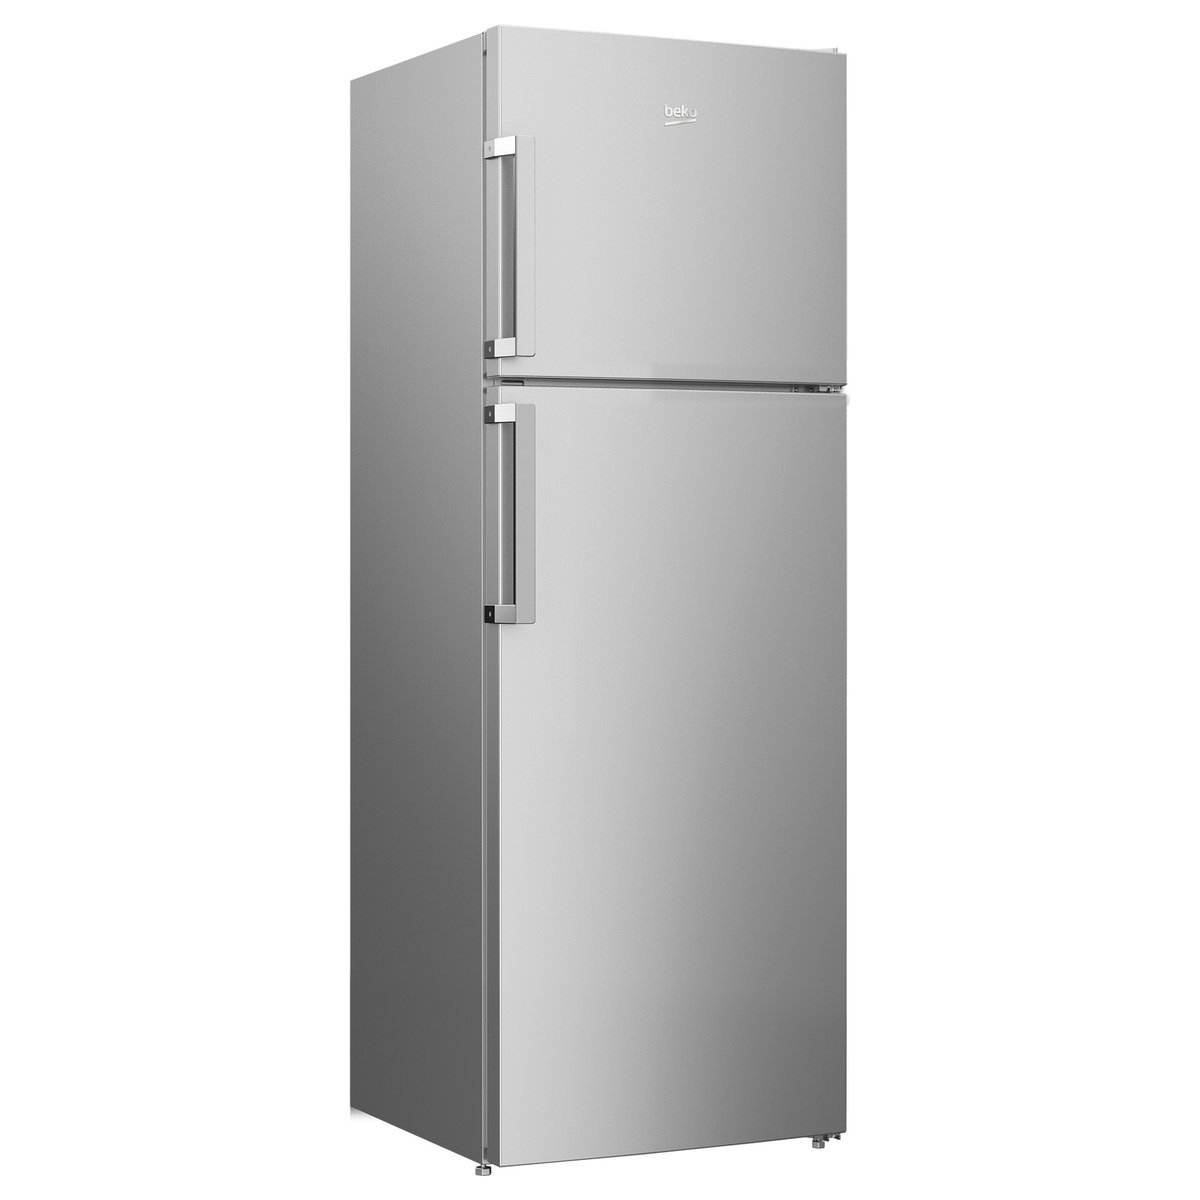 Beko Double Door Refrigerator RDNE350K21S 390LTR